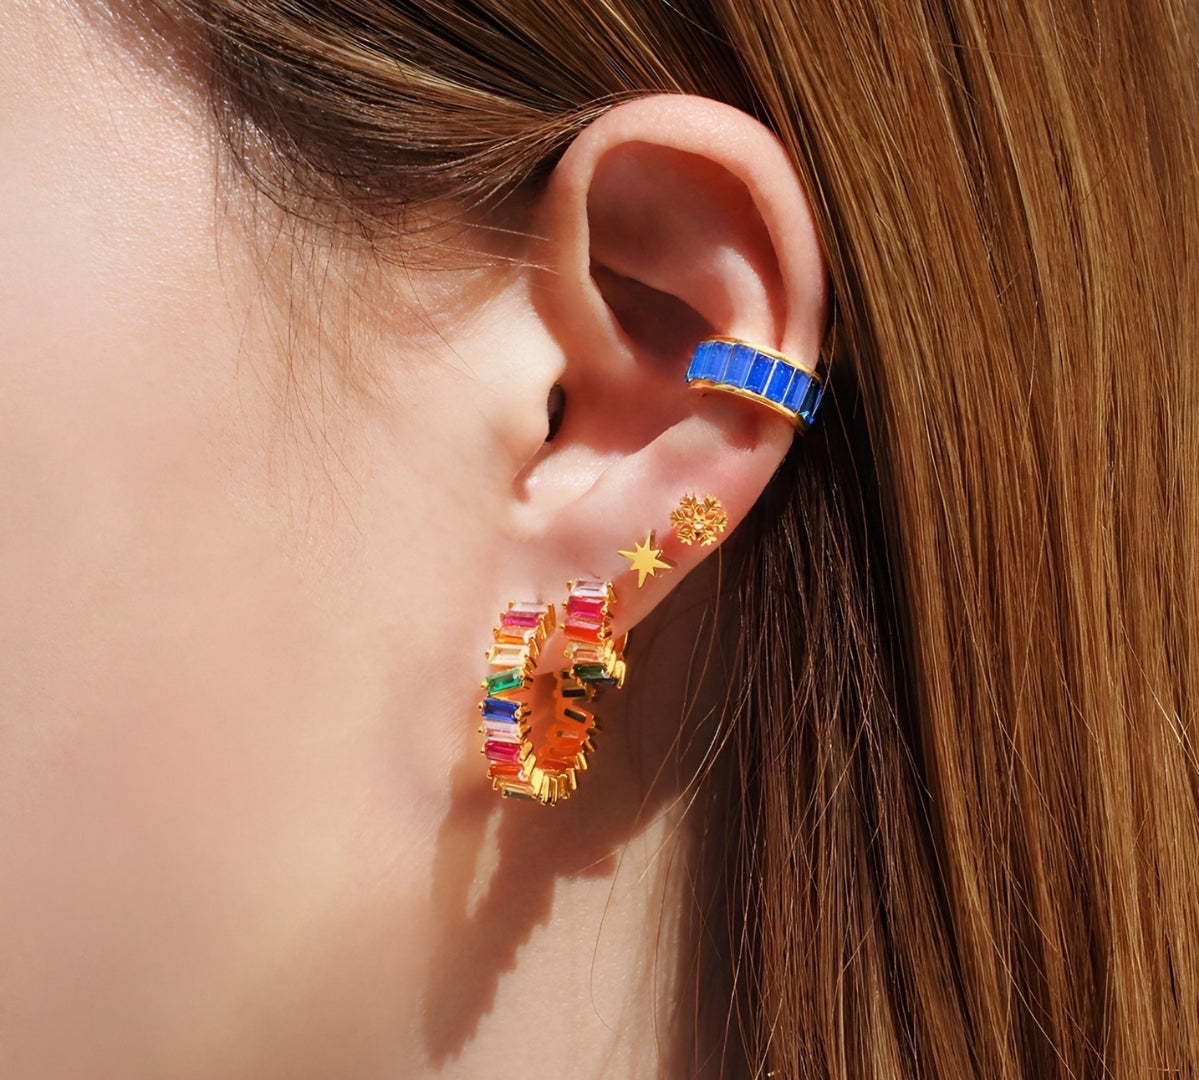 Crystal Rainbow Baguette 25 mm Hoop Earrings